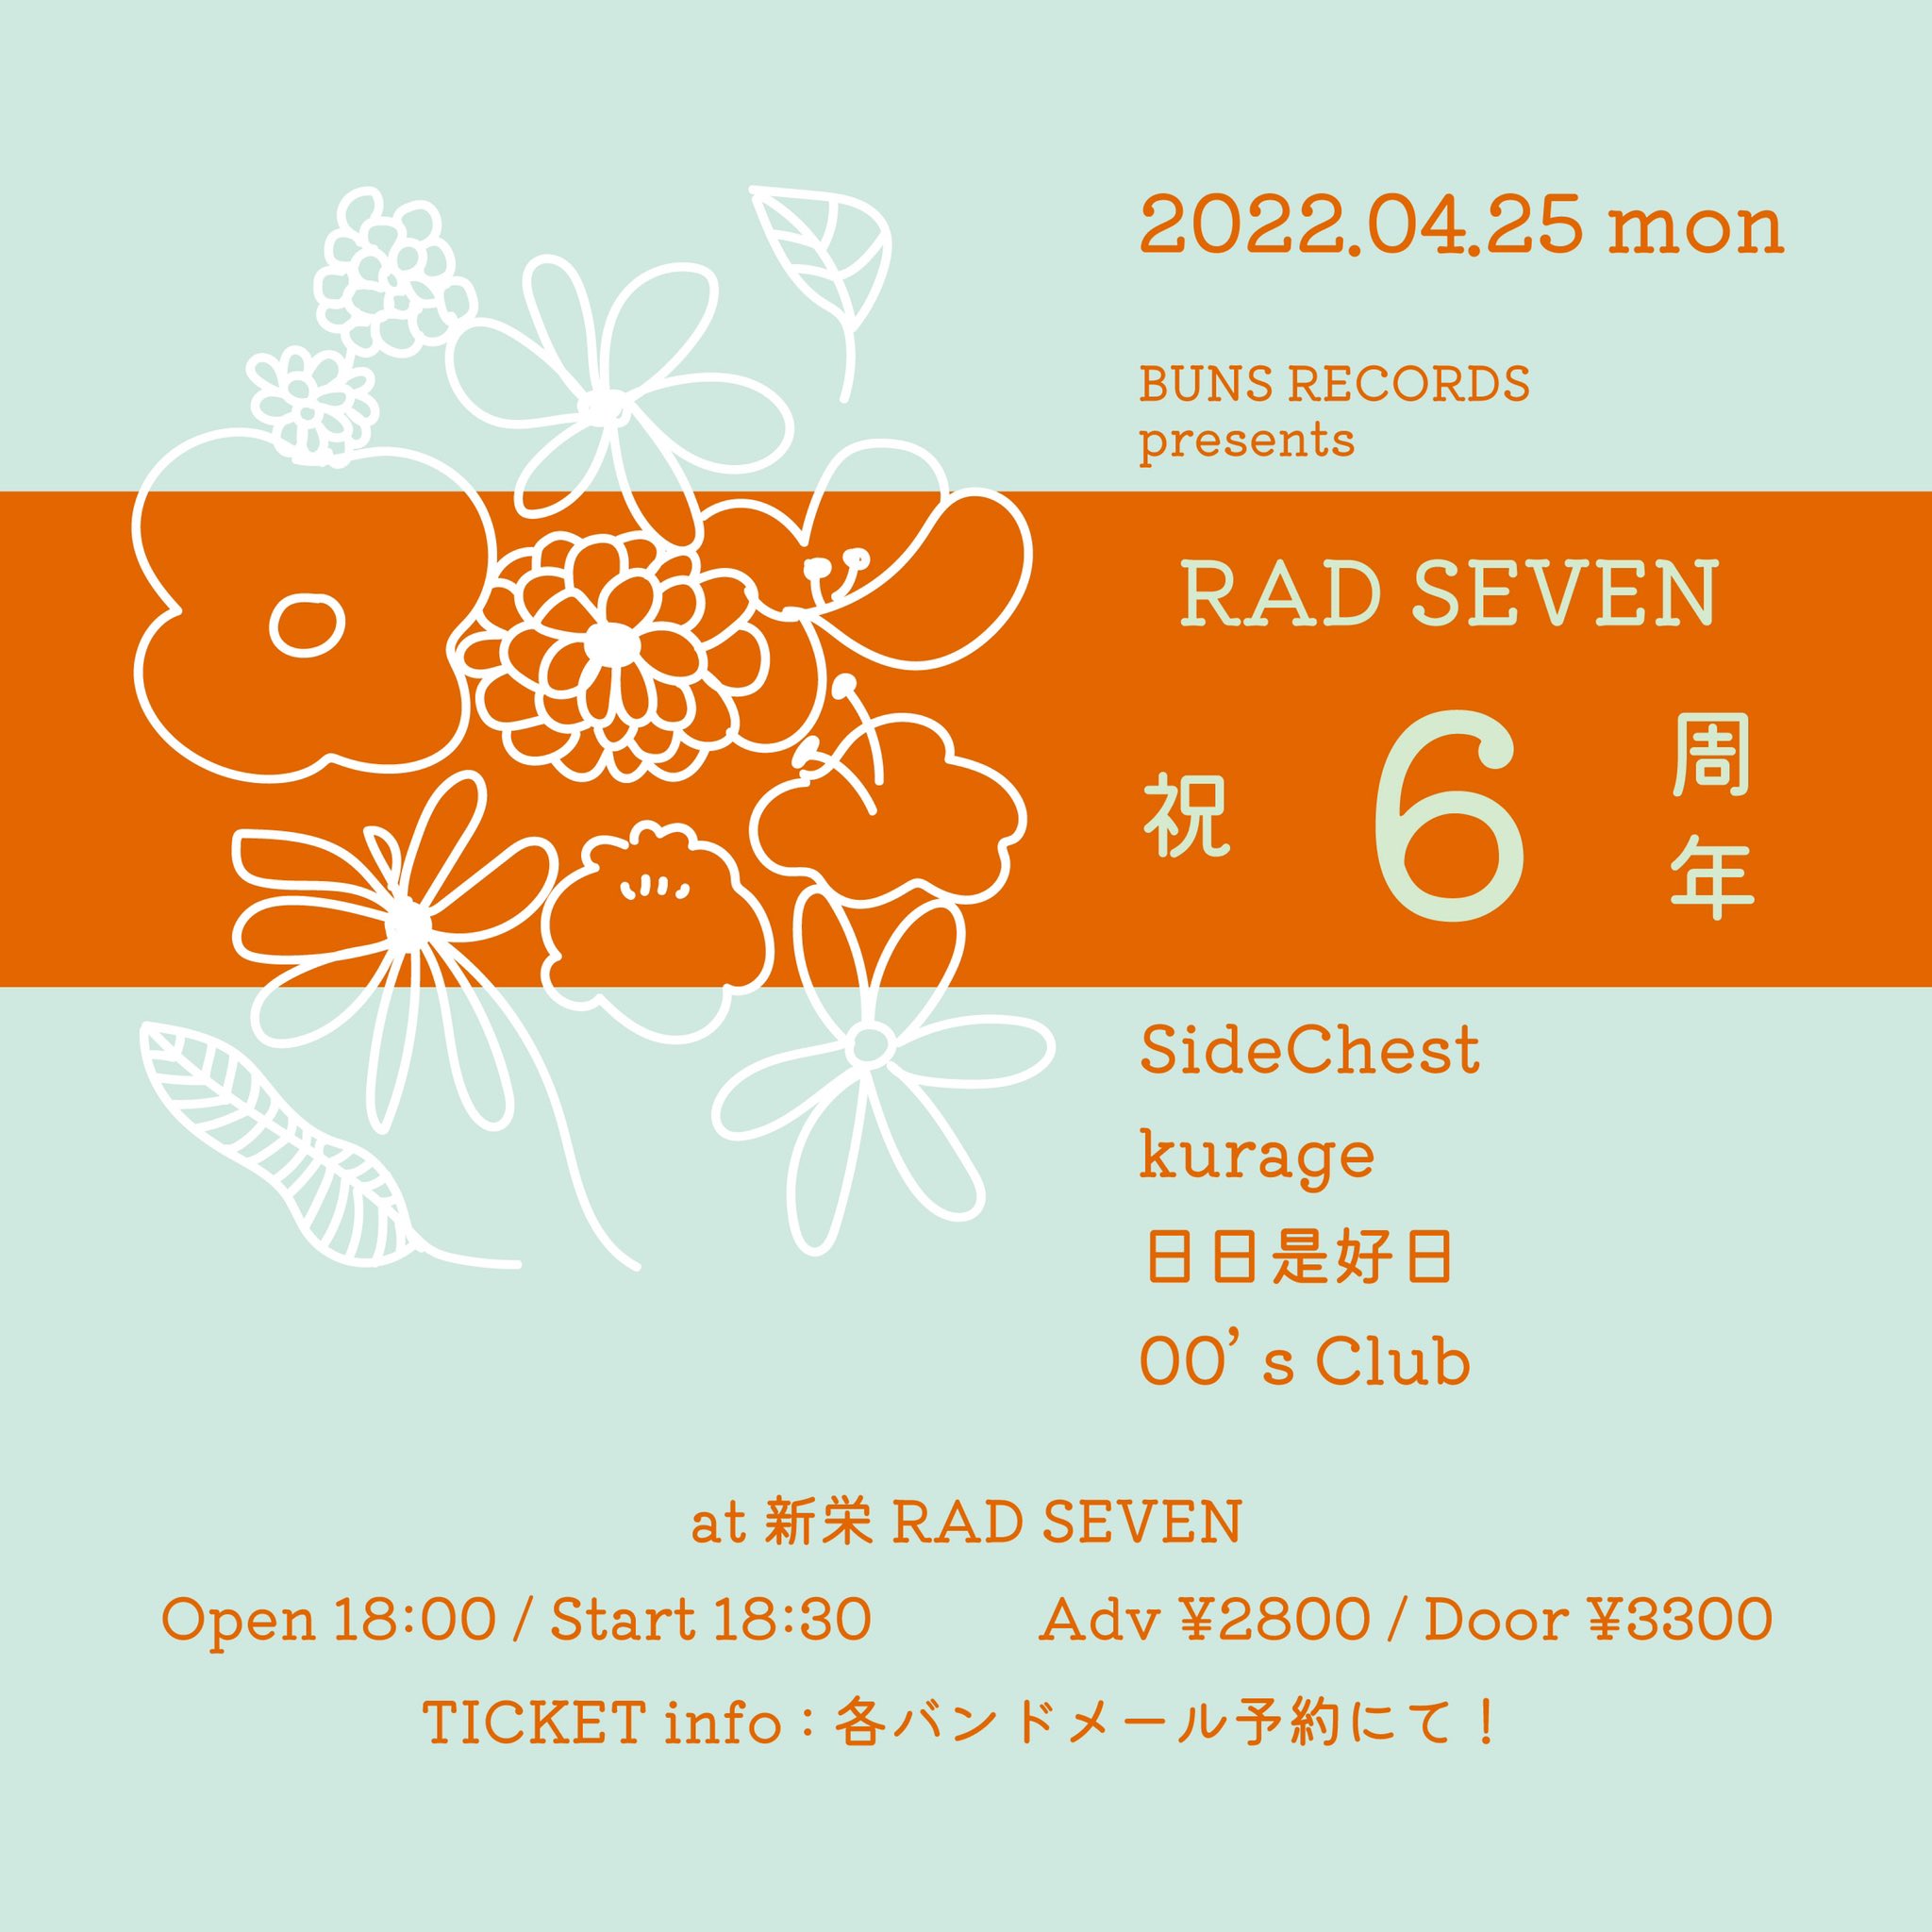 BUNS RECORDS presents “RAD SEVEN 祝 6周年”